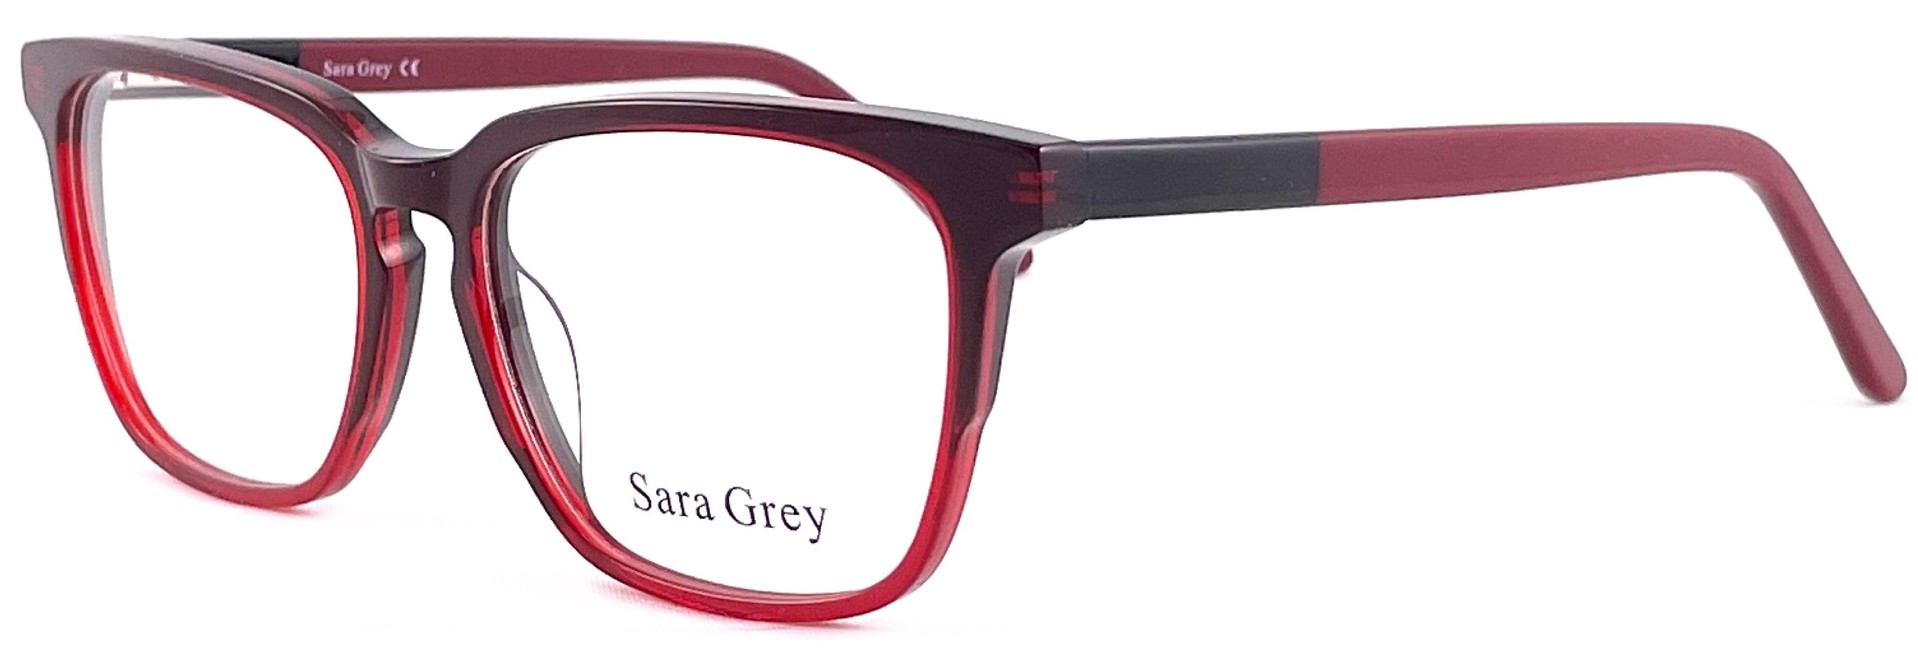 Sara Grey 17558 C02 2